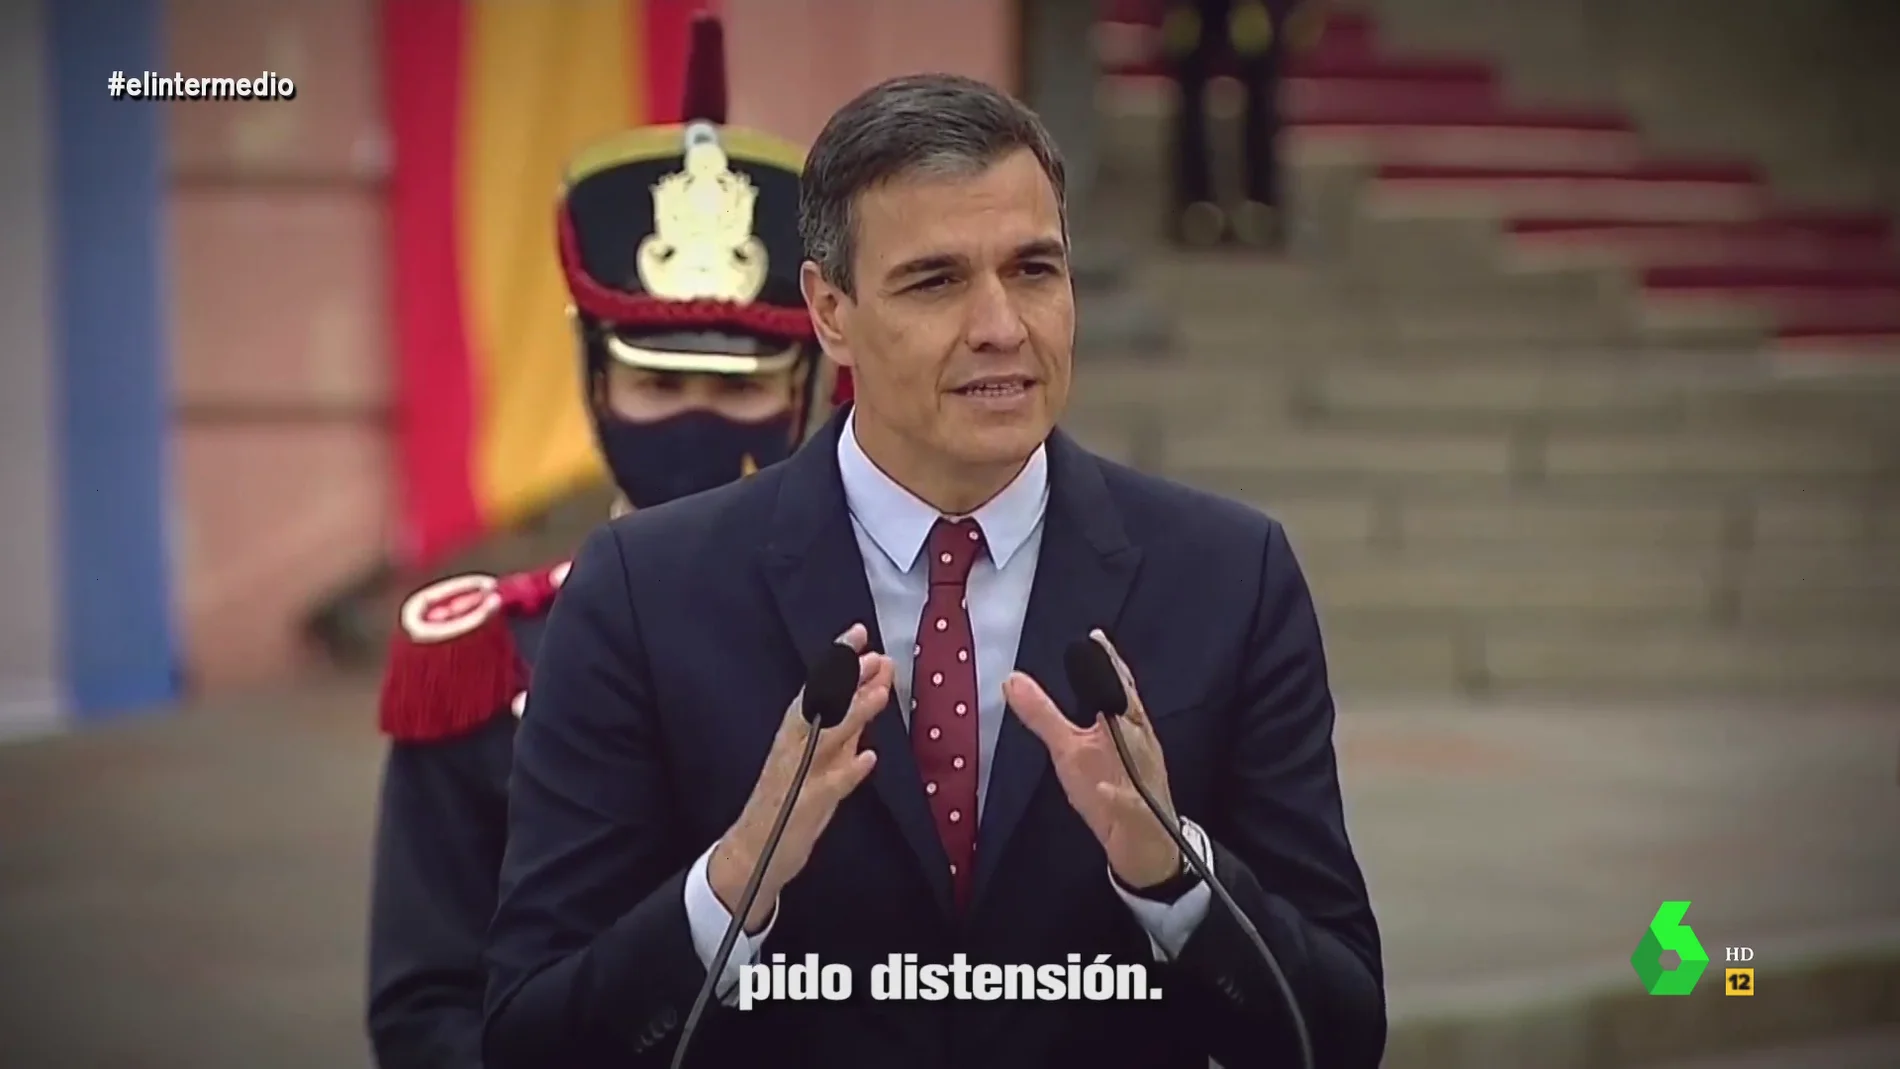 "Pido comprensión, pido distensión": el temazo que enfrenta a Sánchez y Casado sobre los indultos